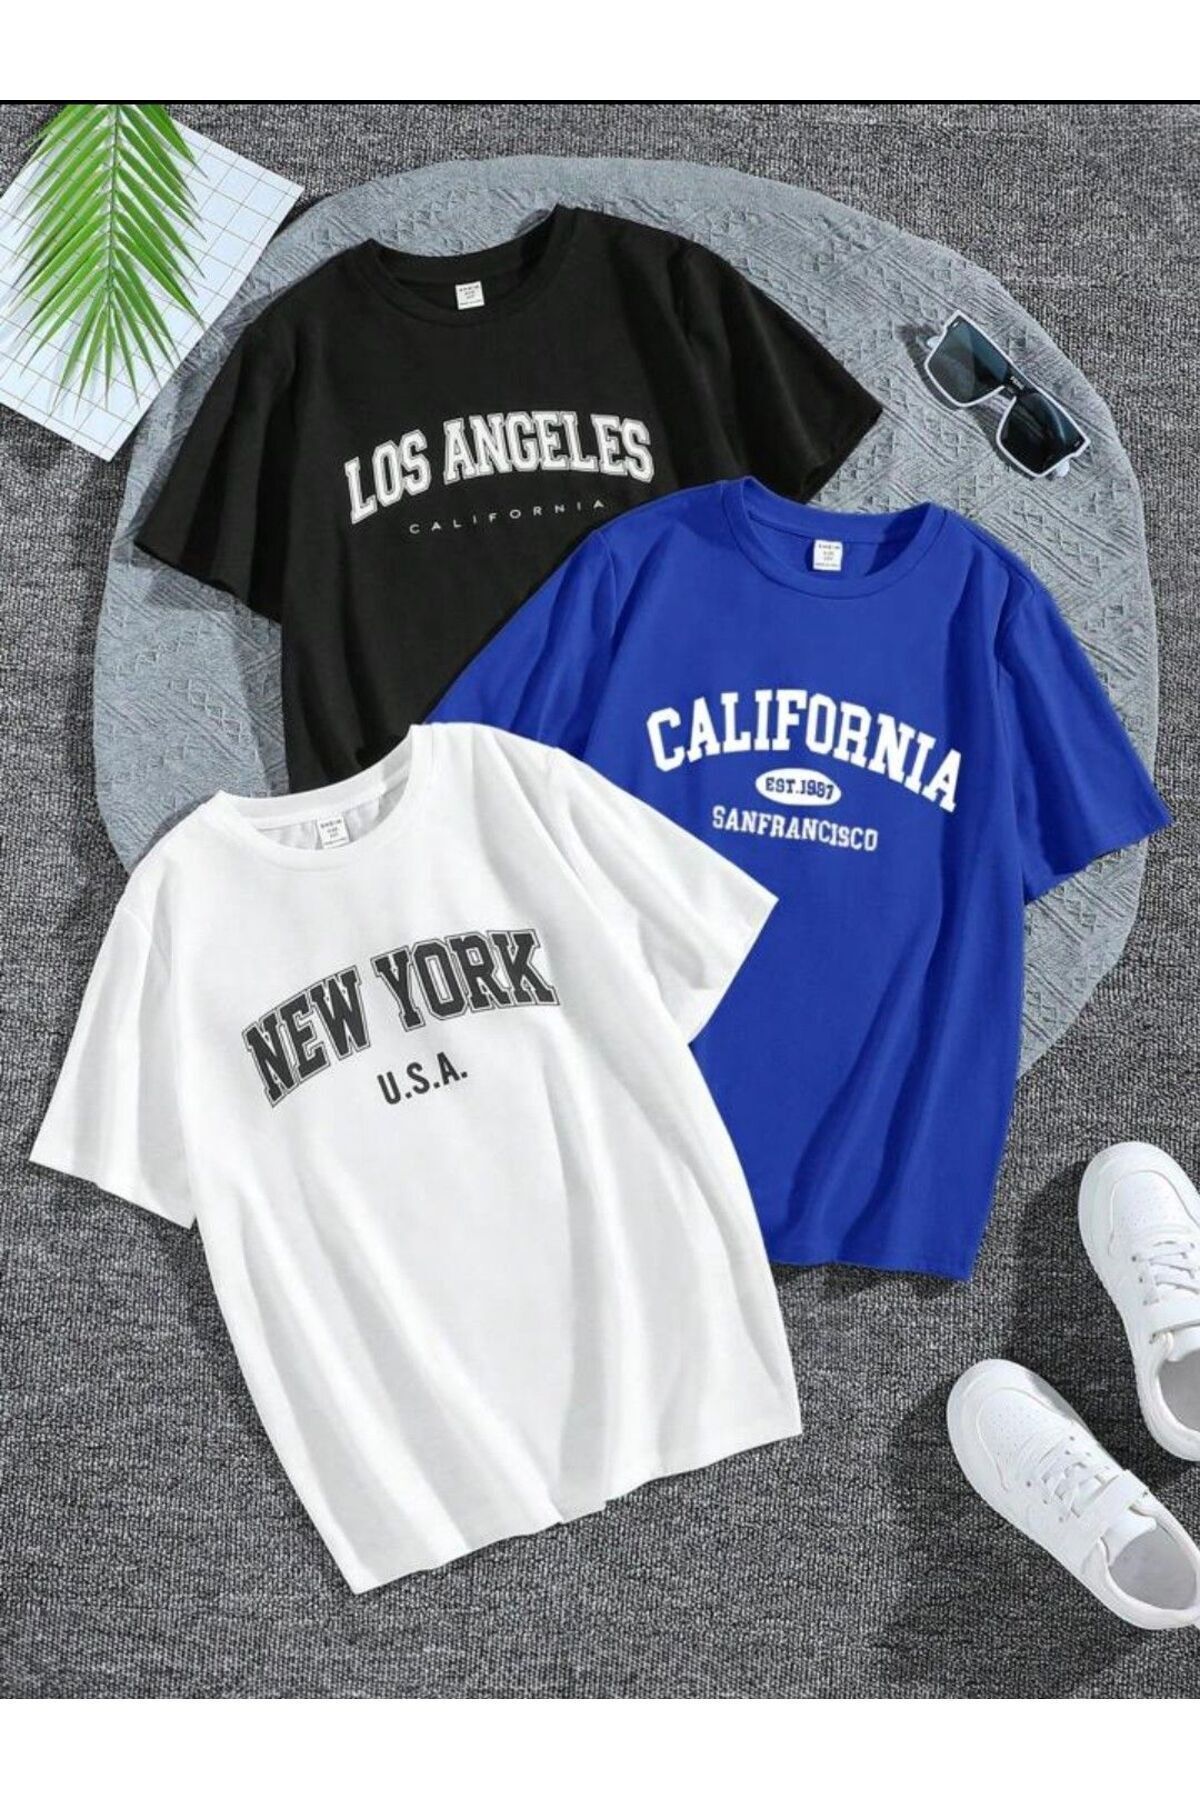 TRENDKOLİK Trend Selection - Üç Renk, Los Angeles, California, New York Baskılı, Oversize, Unisex T-shirt